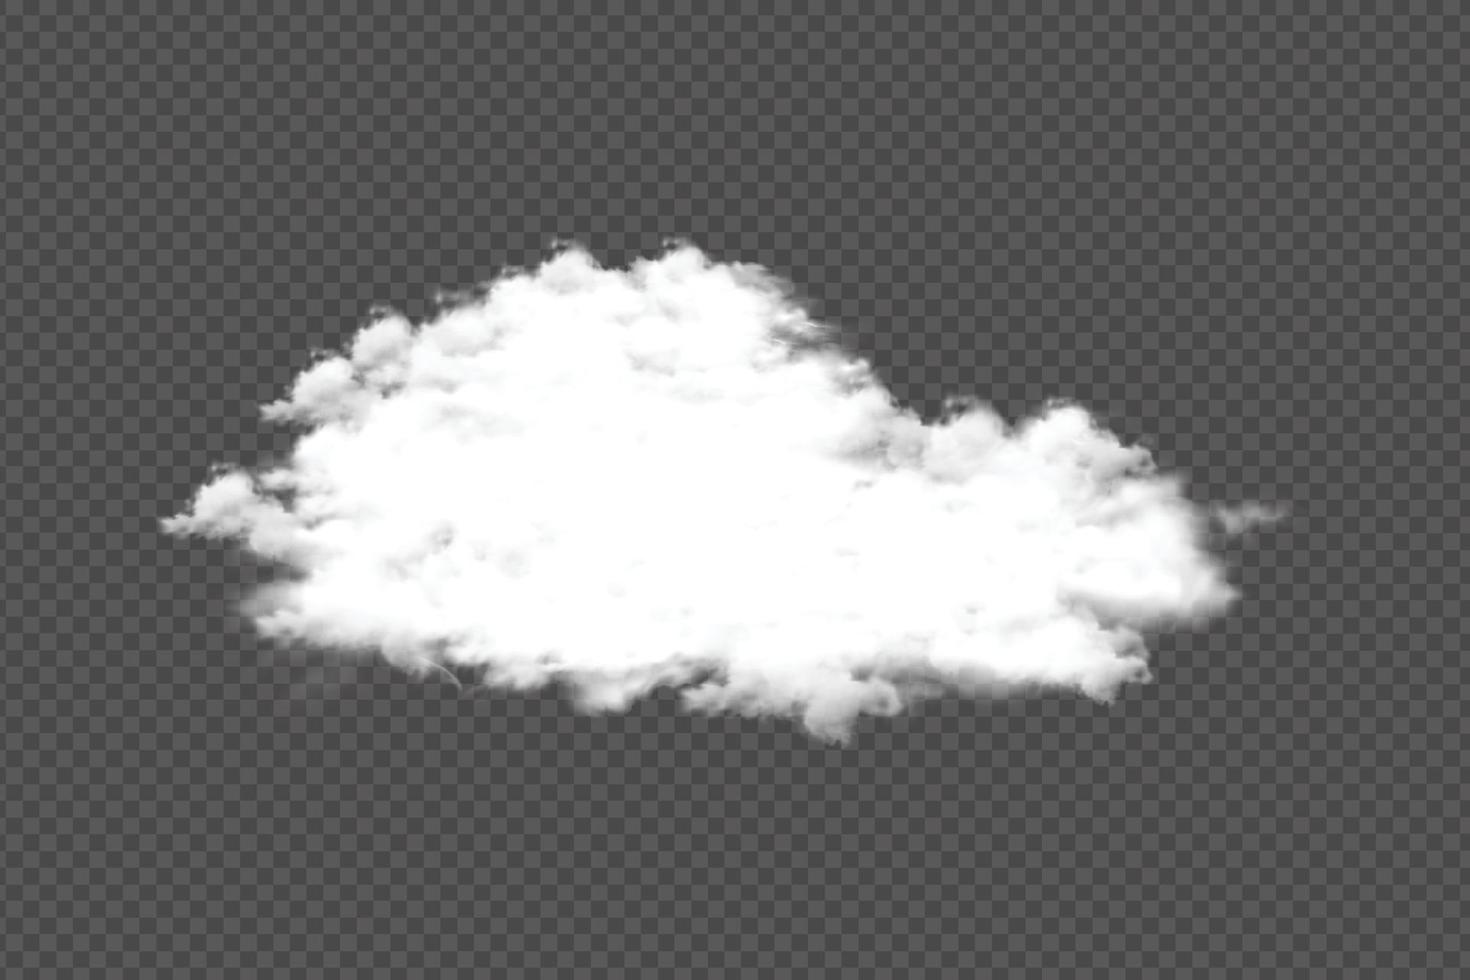 una nube realista flotando sobre un fondo transparente. vector de nube blanca sobre fondo oscuro para la plantilla u otra manipulación. concepto de tormenta y cielo con nubes realistas para la decoración de plantillas